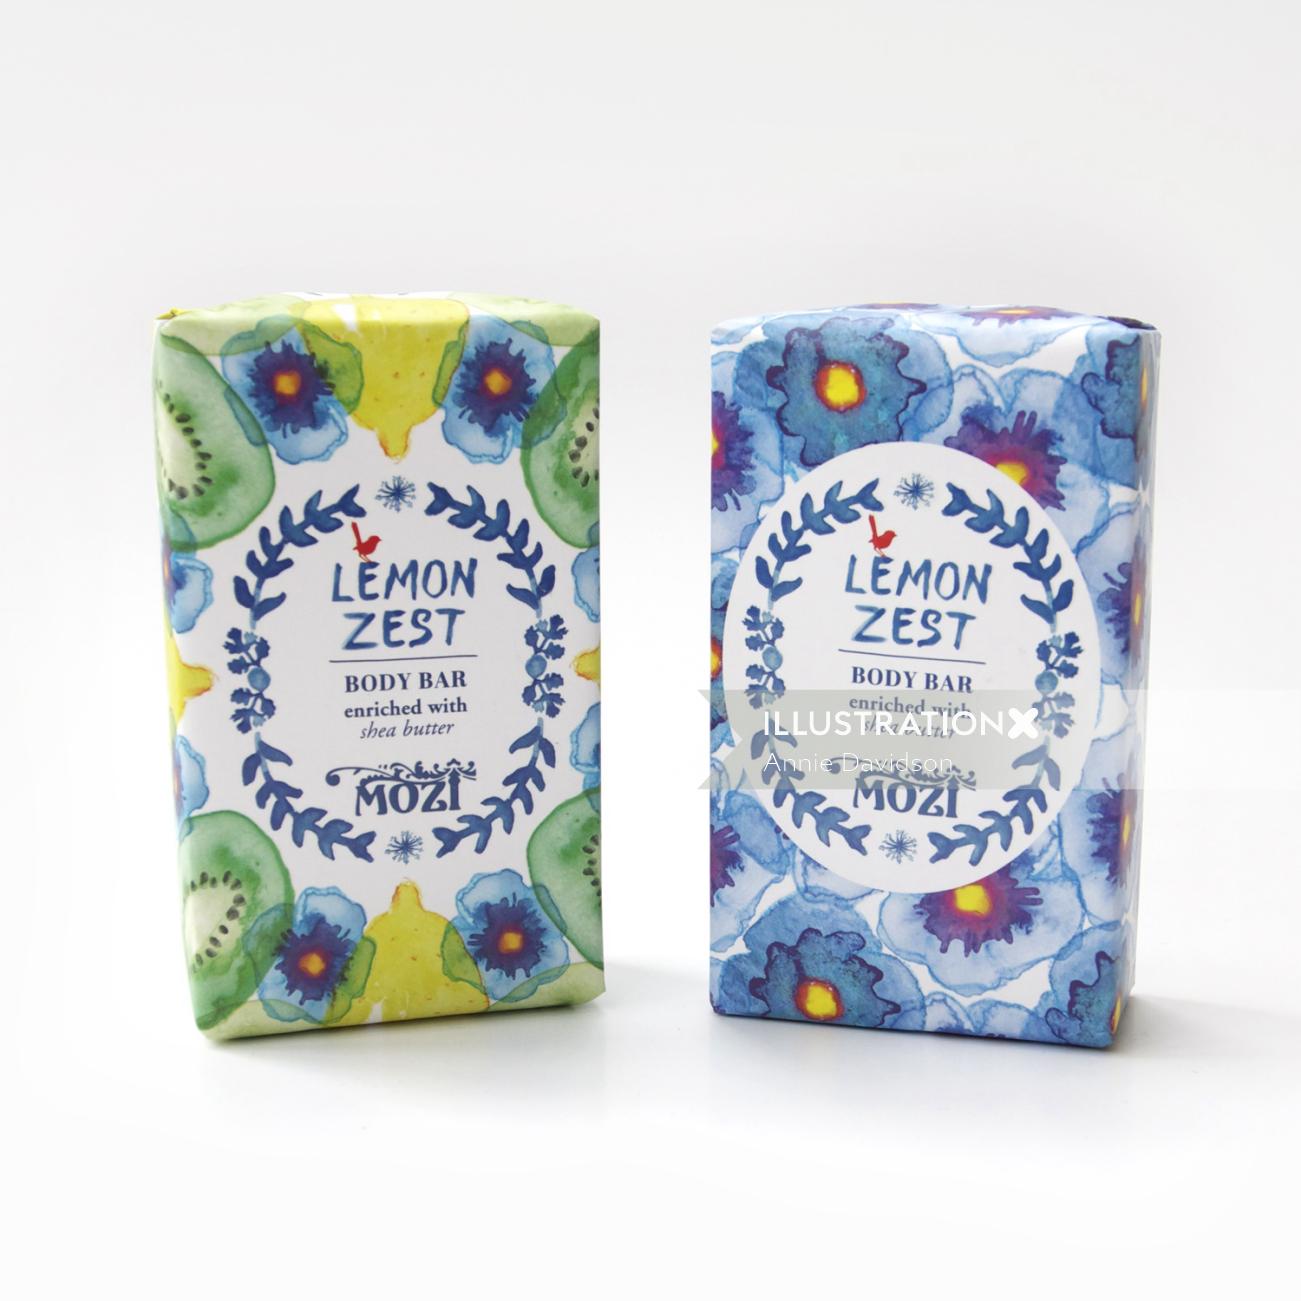 Lemon zest soap packing design by Annie Davidson